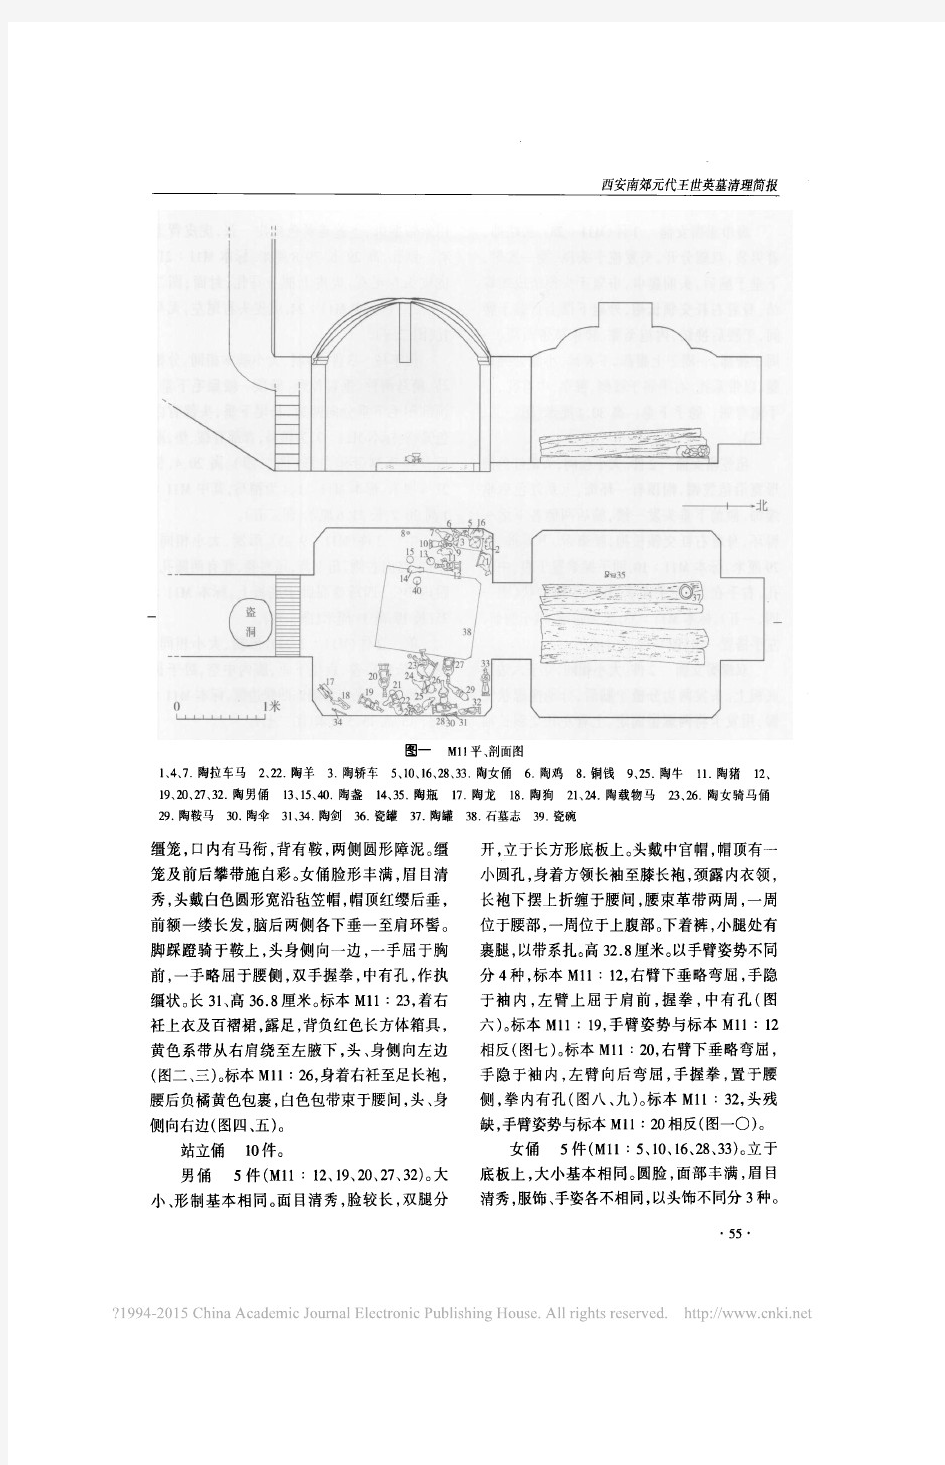 《文物》杂志2008年第6期--西安南郊元代王世英墓清理简报_王久刚